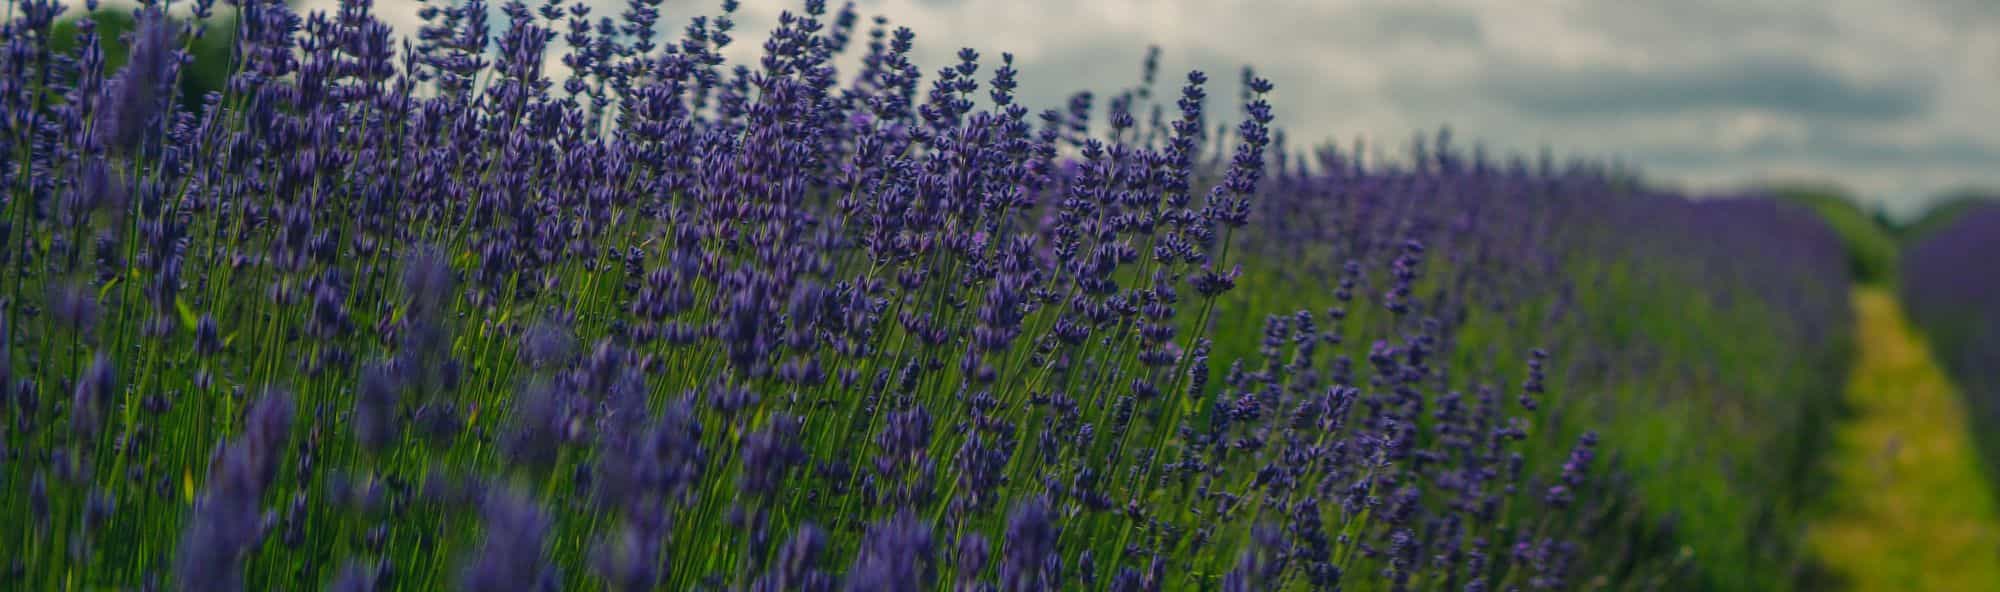 Mayfield Lavender Farm, Barnstead, England, United Kingdom